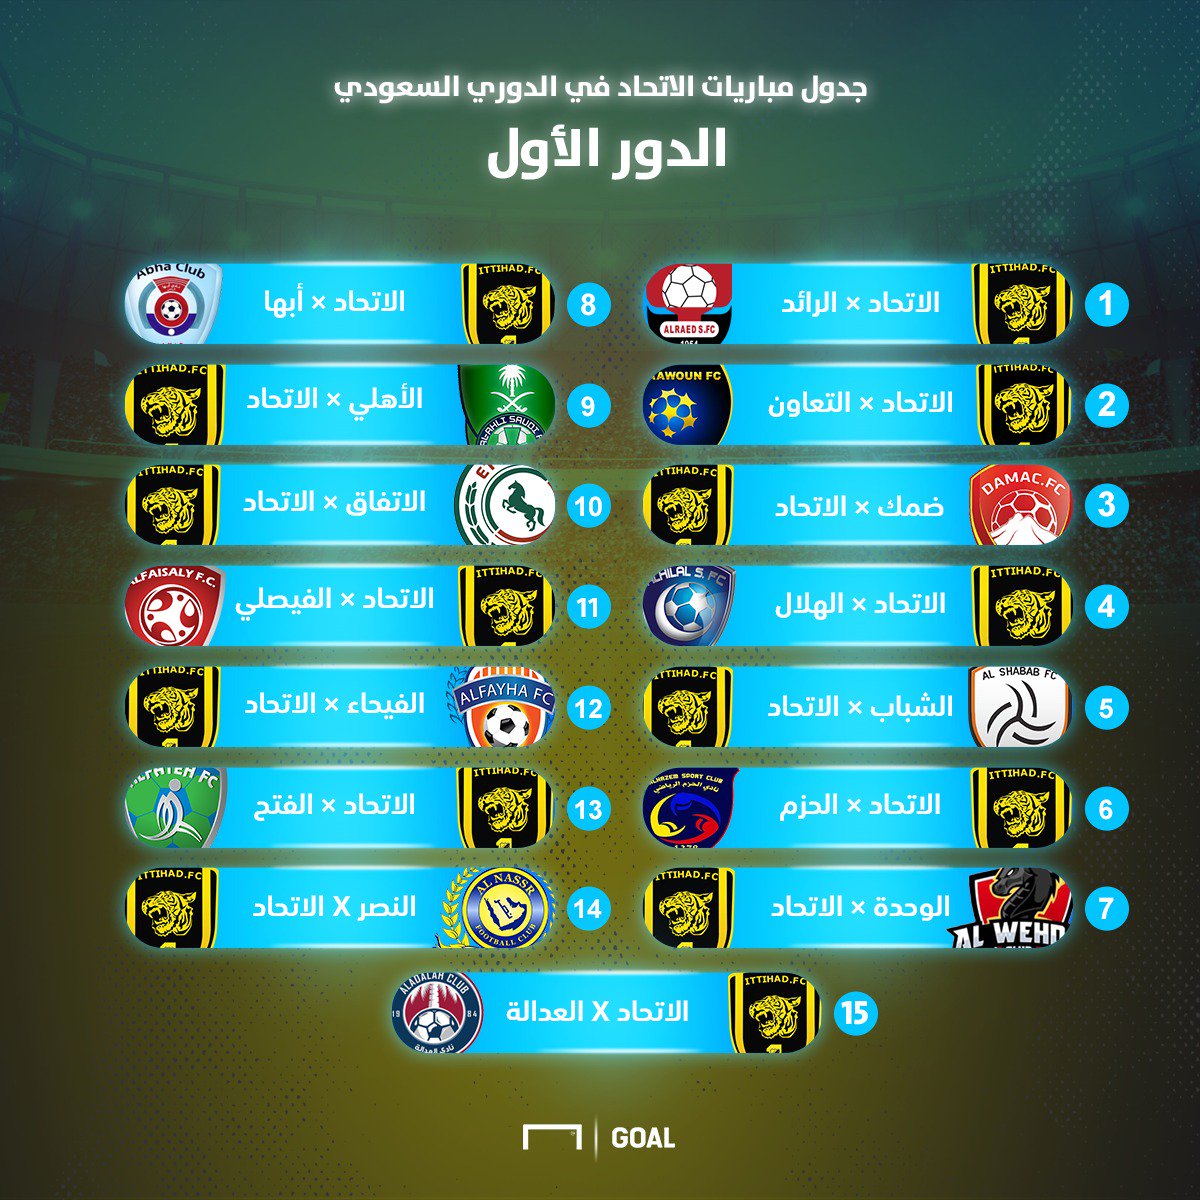 جدول مباريات الكبار في الدوري السعودي للمحترفين موسم 2019 - 2020 🔥 / X